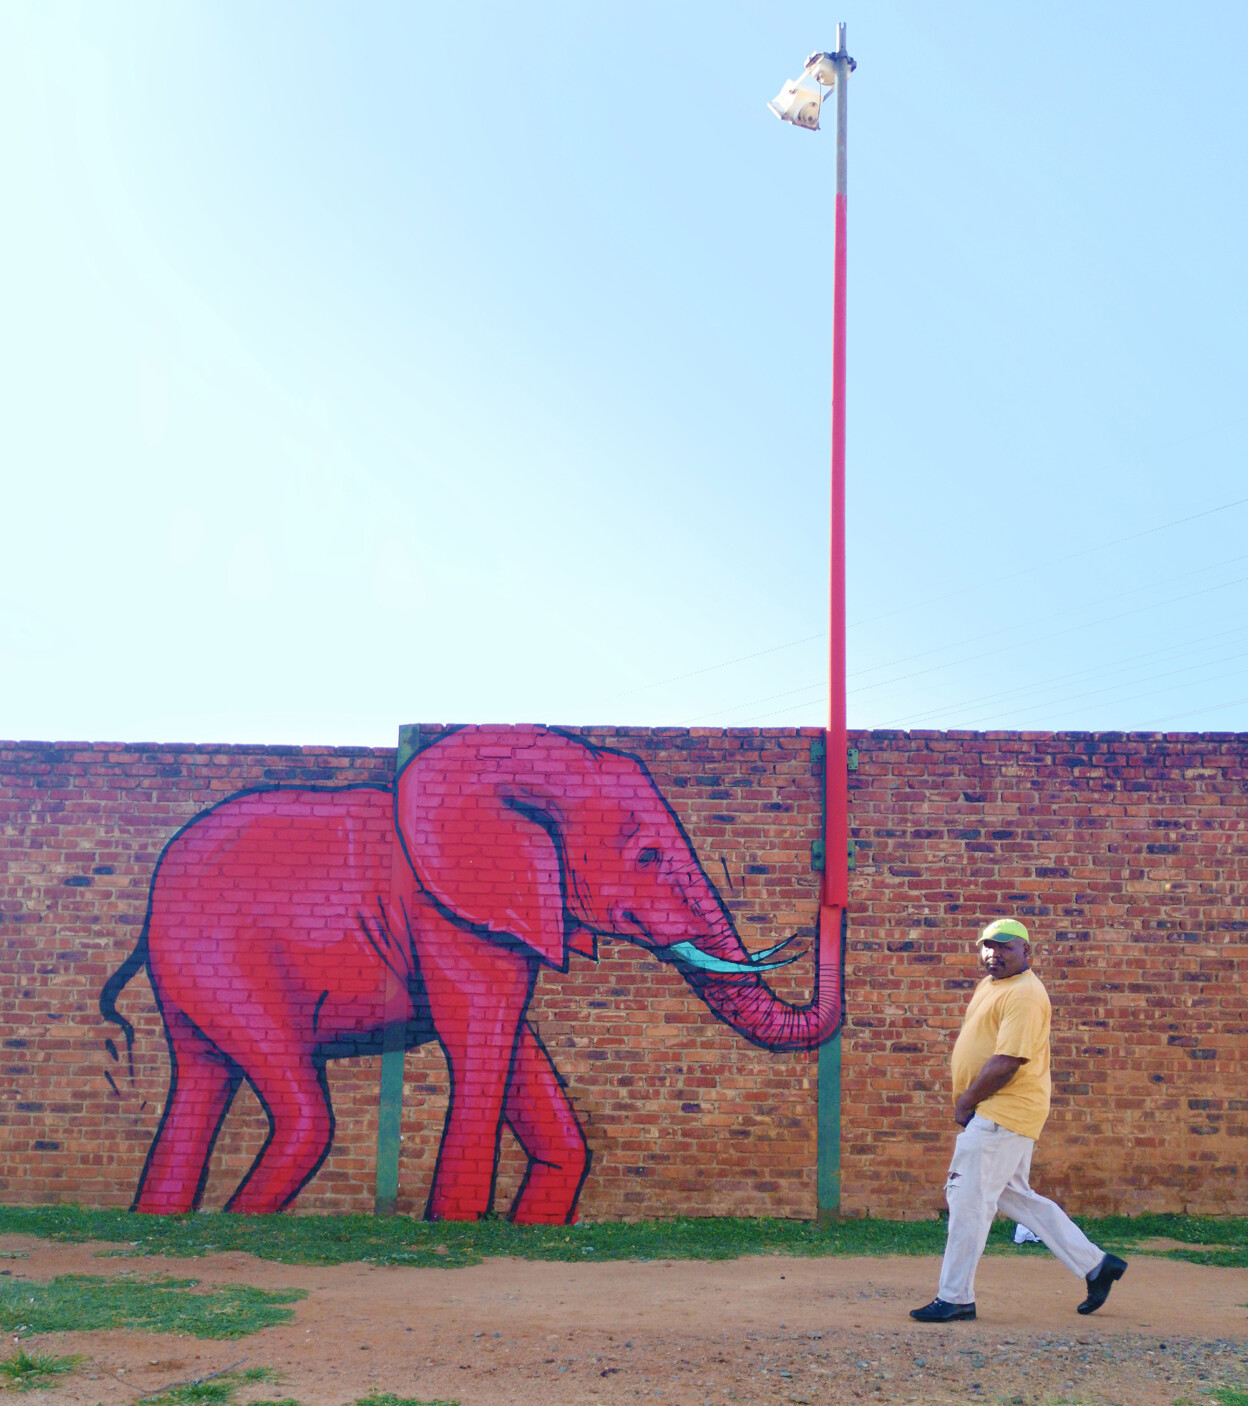 Артист создава неверојатни мурали со слонови кои ја разубавуваат околината